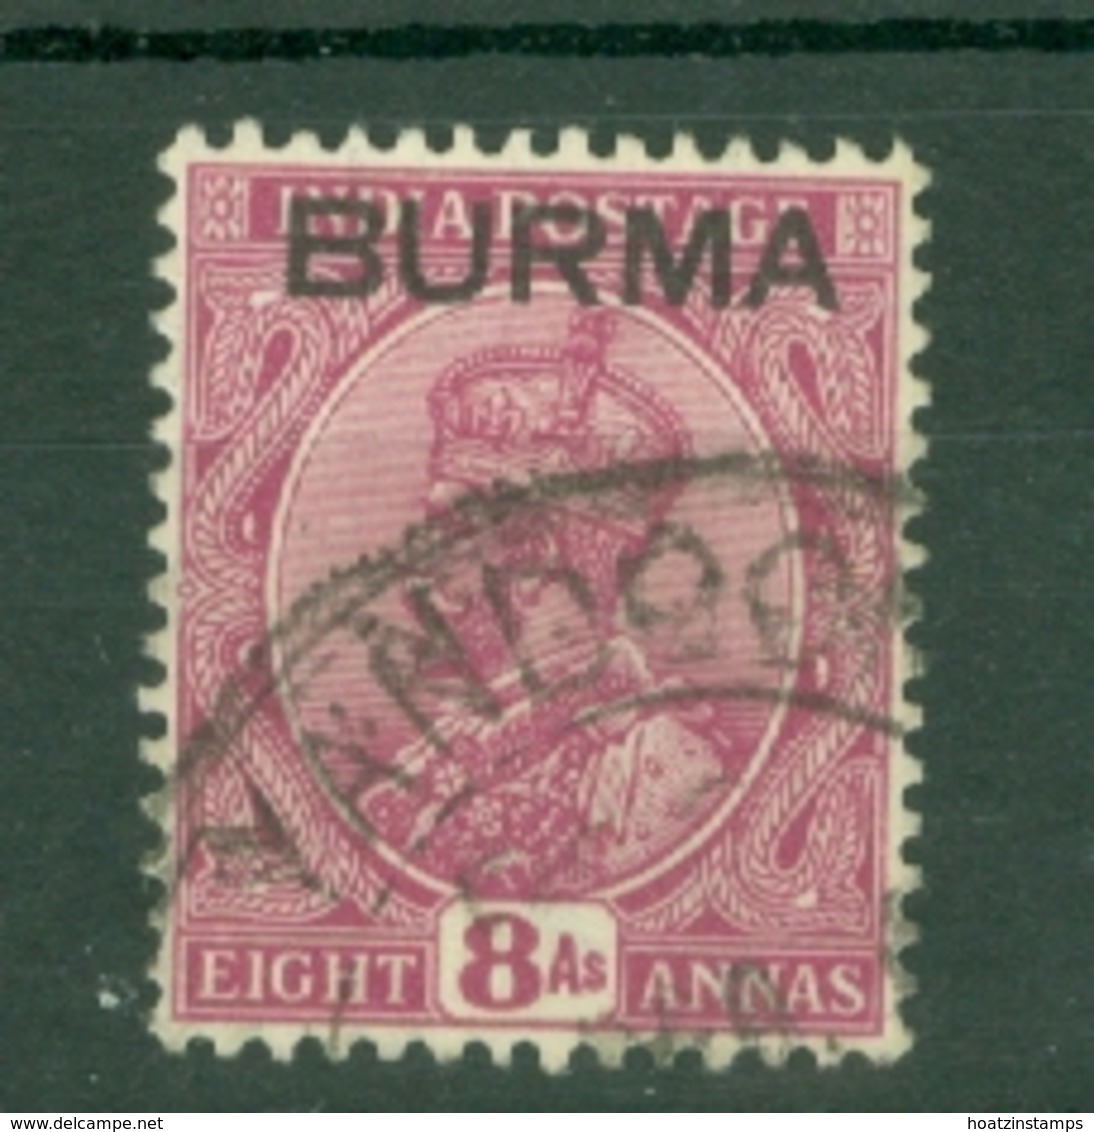 Burma: 1937   KGV 'Burma' OVPT    SG11     8a    Used - Burma (...-1947)